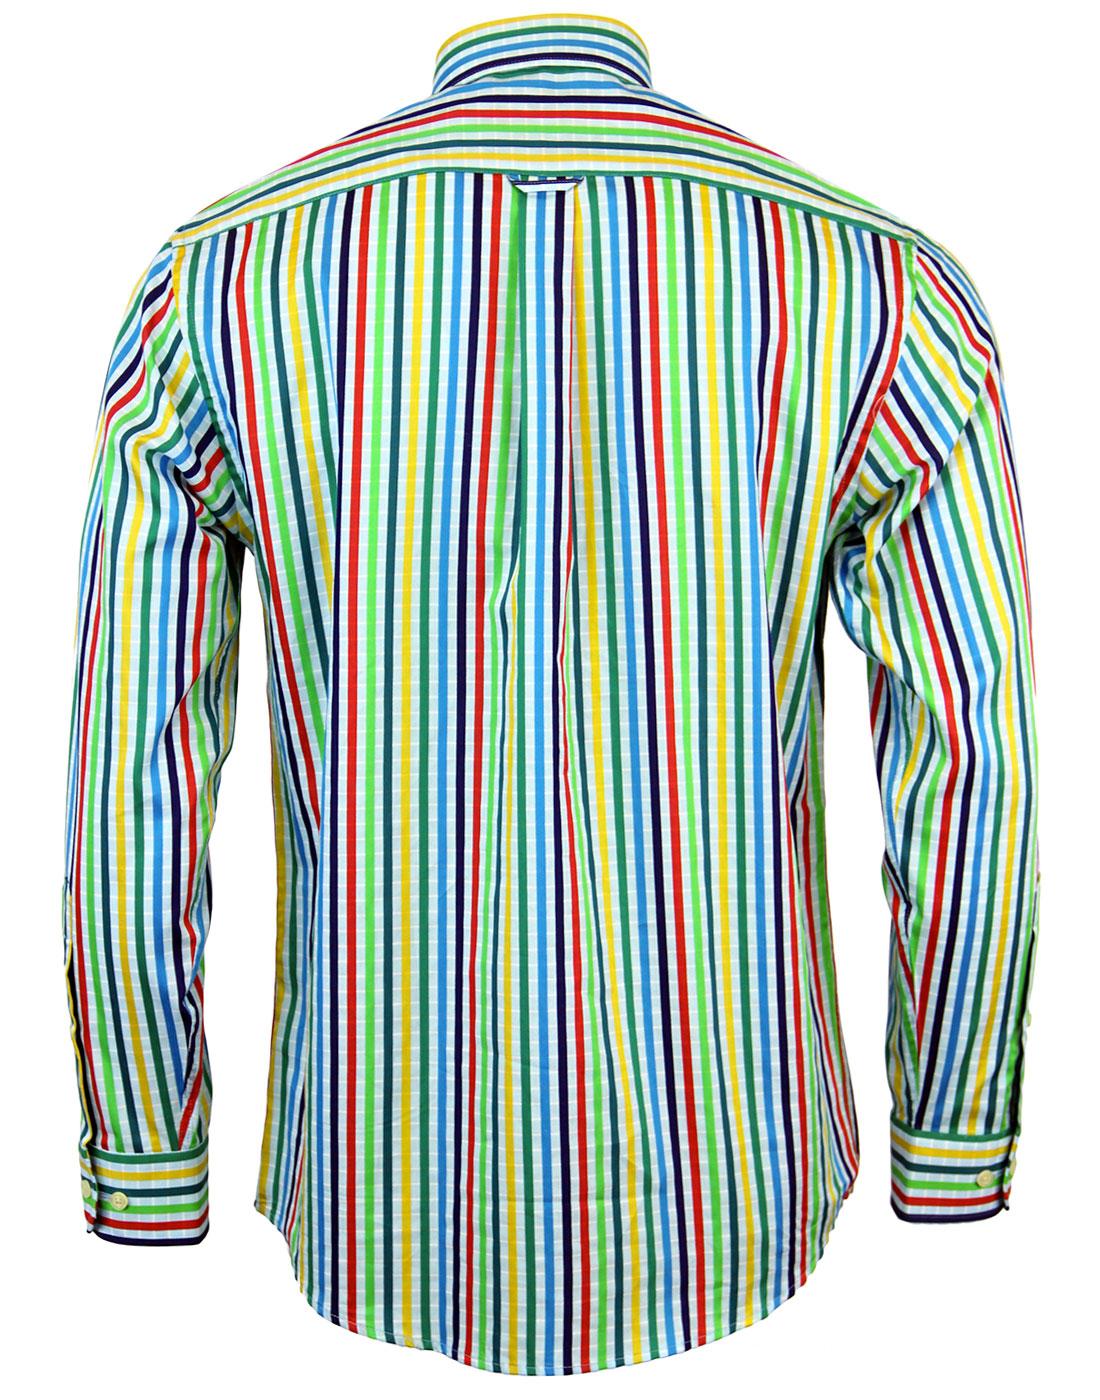 VIYELLA Retro 1960s Mod Multi Stripe Check Button Down Shirt Blue